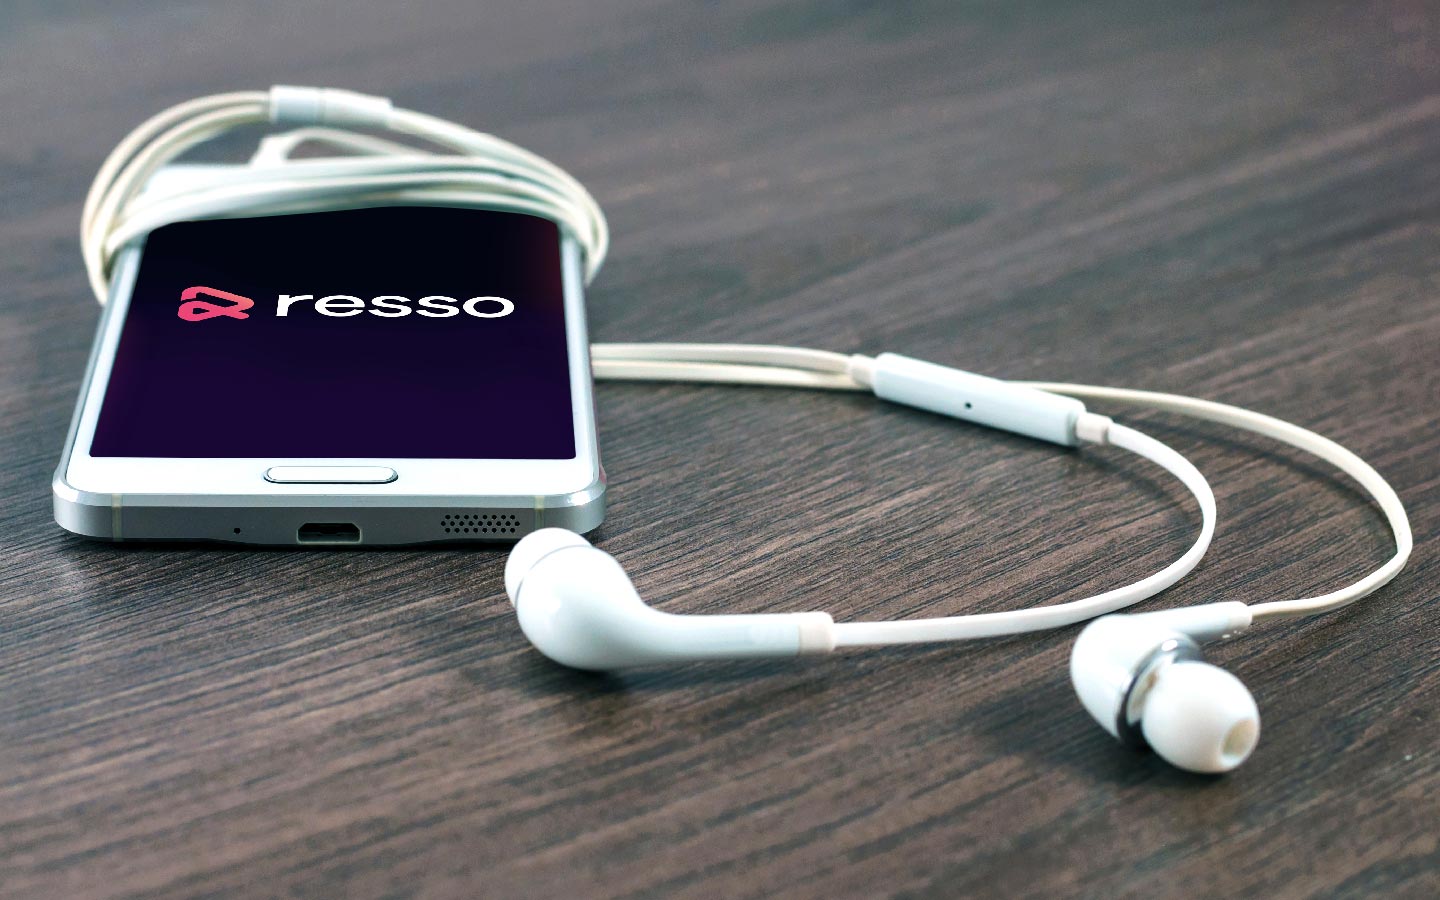 ByteDance è già proprietaria di Resso, un servizio di streaming musicale attivo in alcuni Paesi esteri